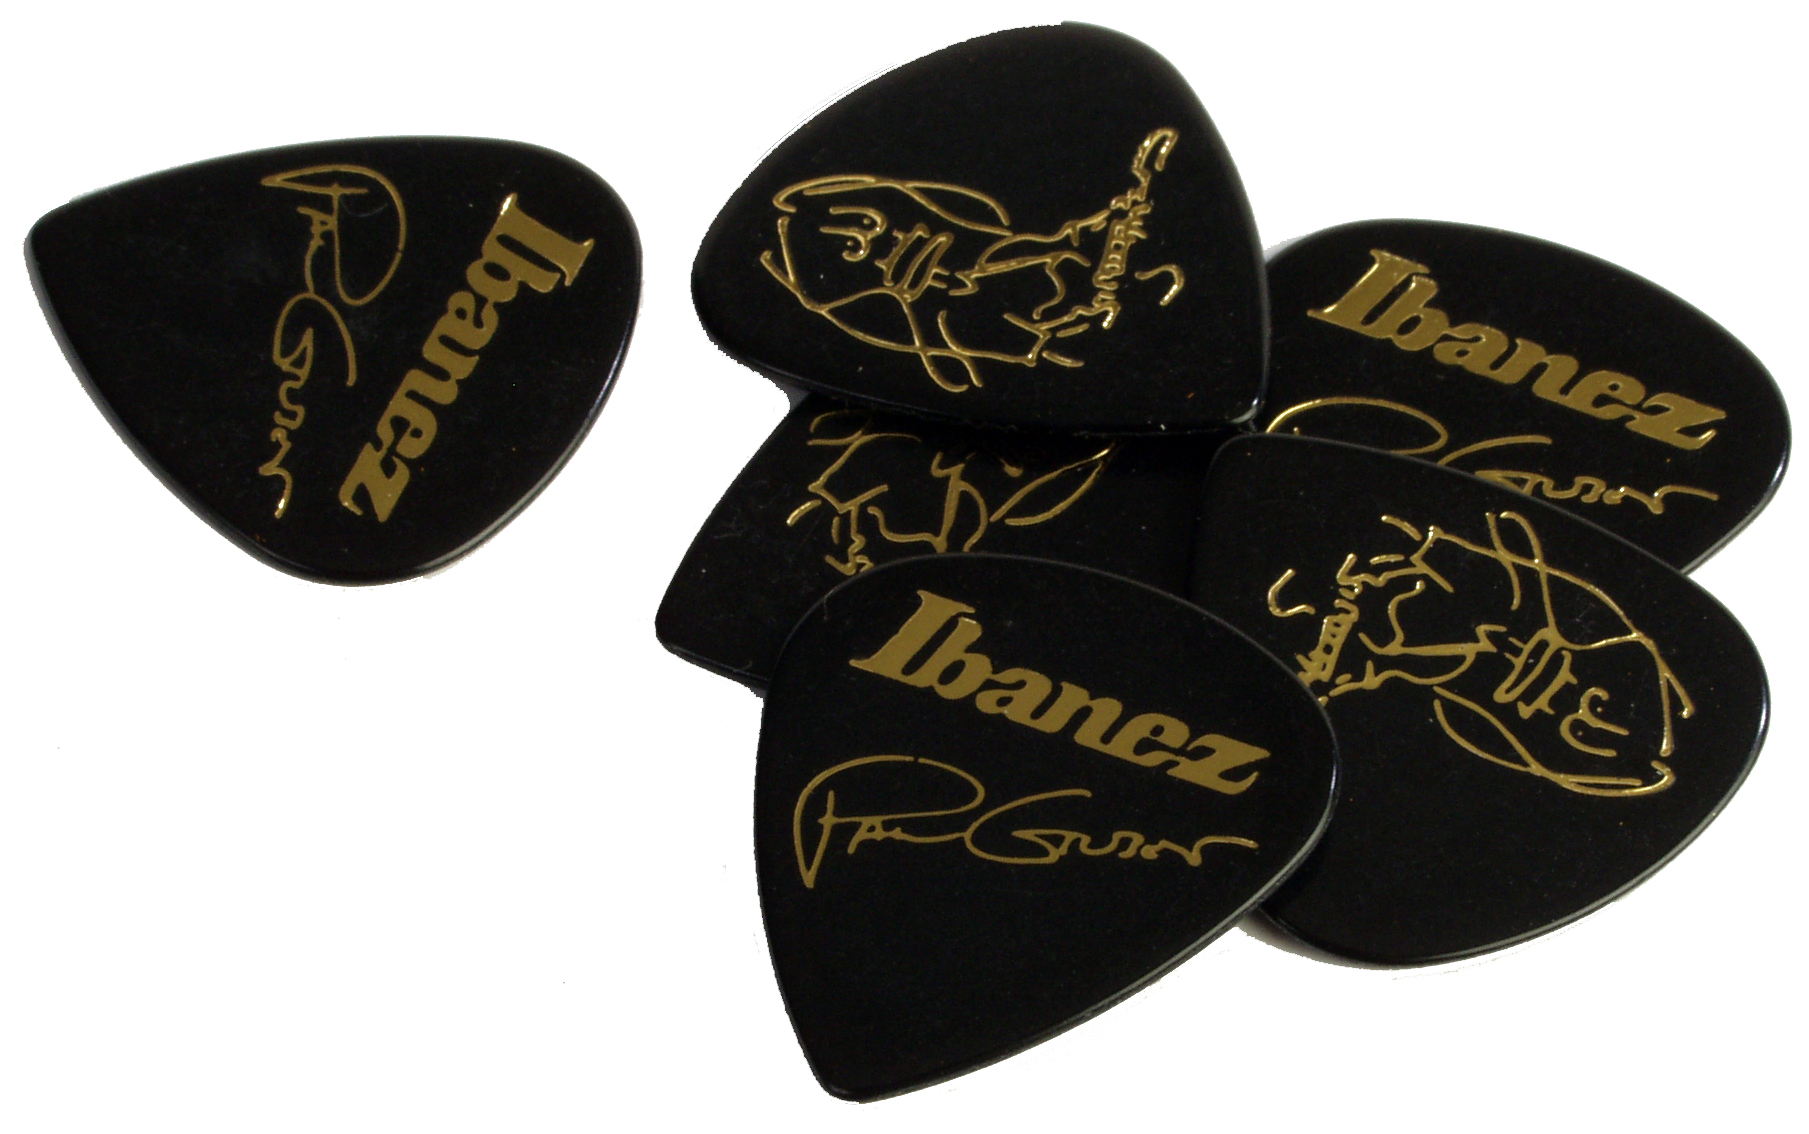 Ibanez Ibanez Paul Gilbert Signature Guitar Picks, 6 Pack - Black